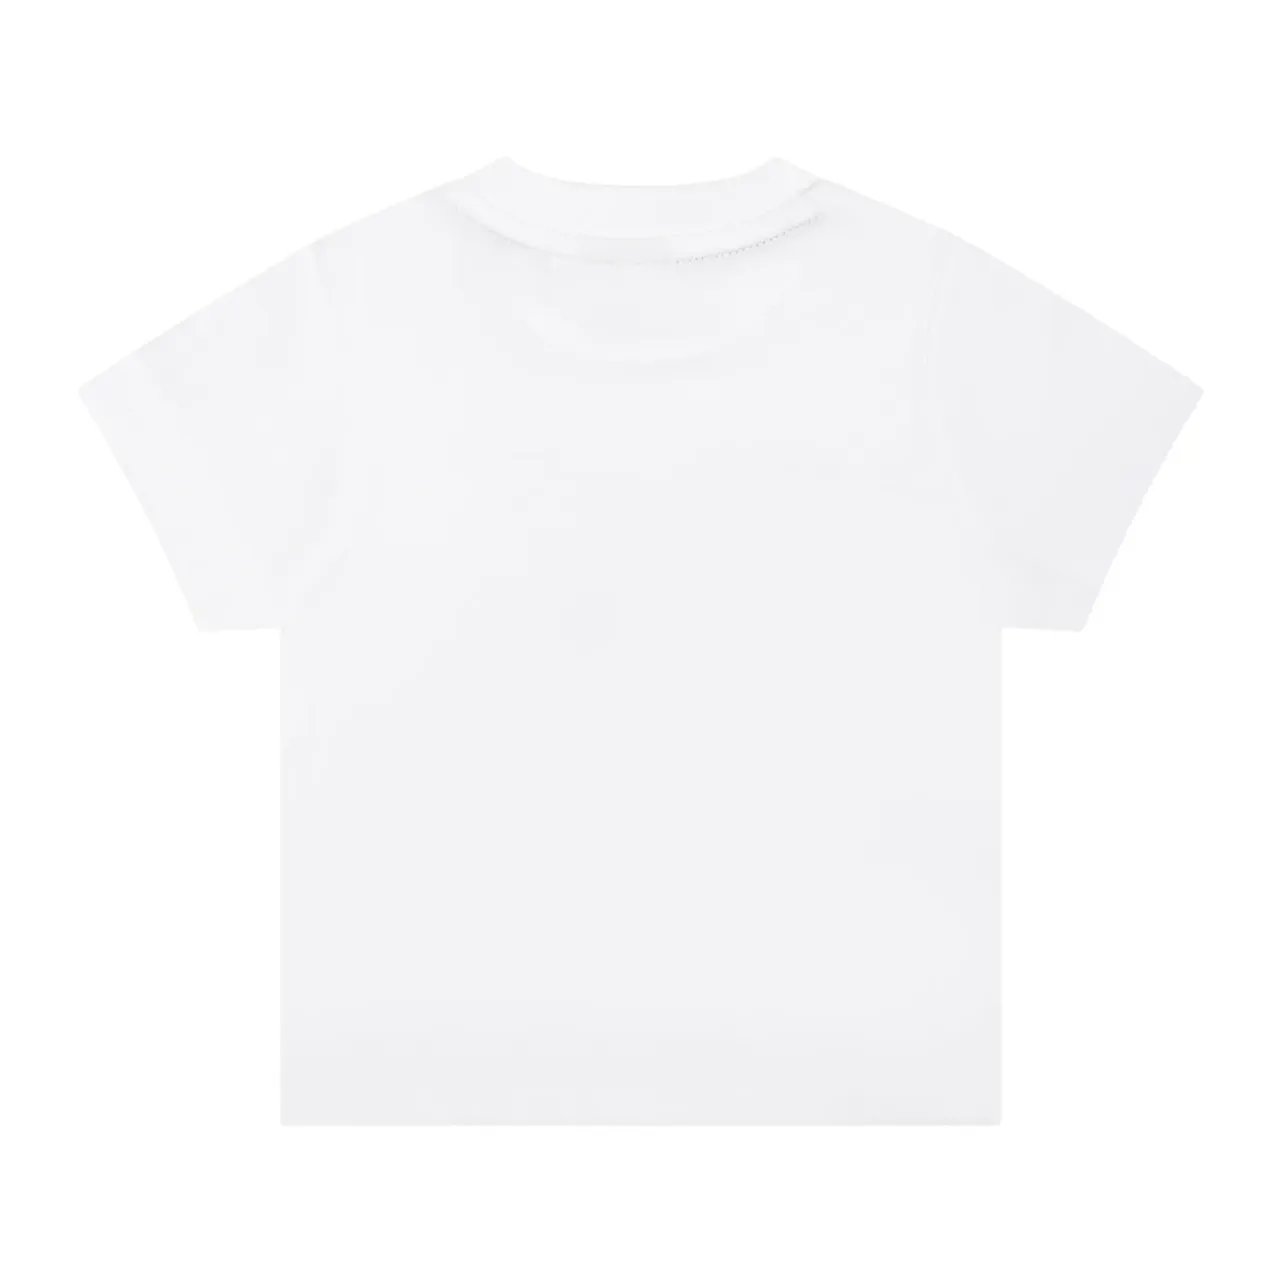 Hugo Boss , White Cotton T-Shirt with Multicolored Logo ,White unisex, Sizes: